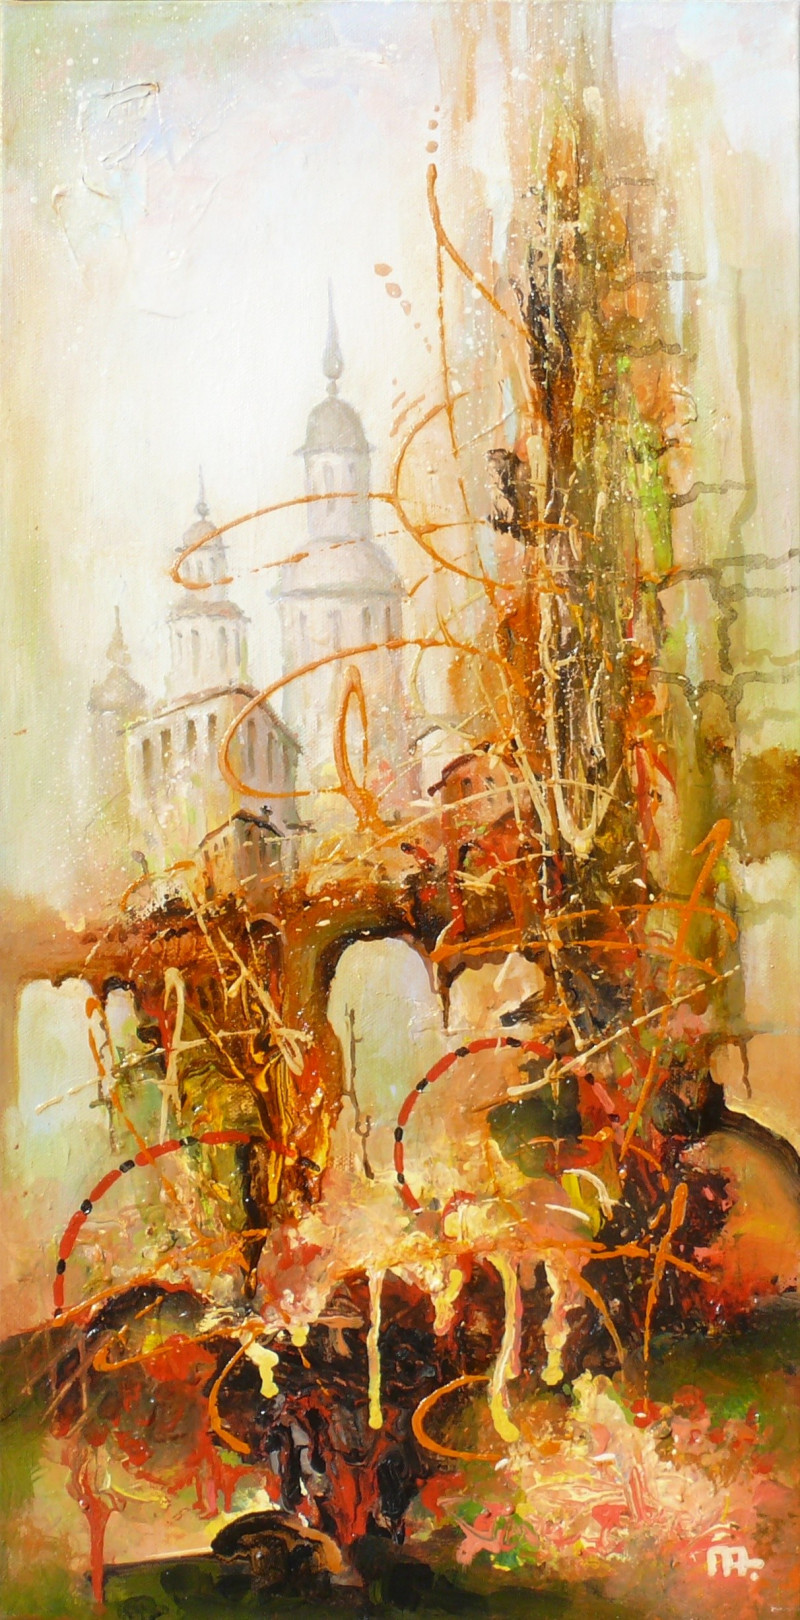 Arūnas Miliukas tapytas paveikslas Pažadintas miestas, Išlaisvinta fantazija , paveikslai internetu